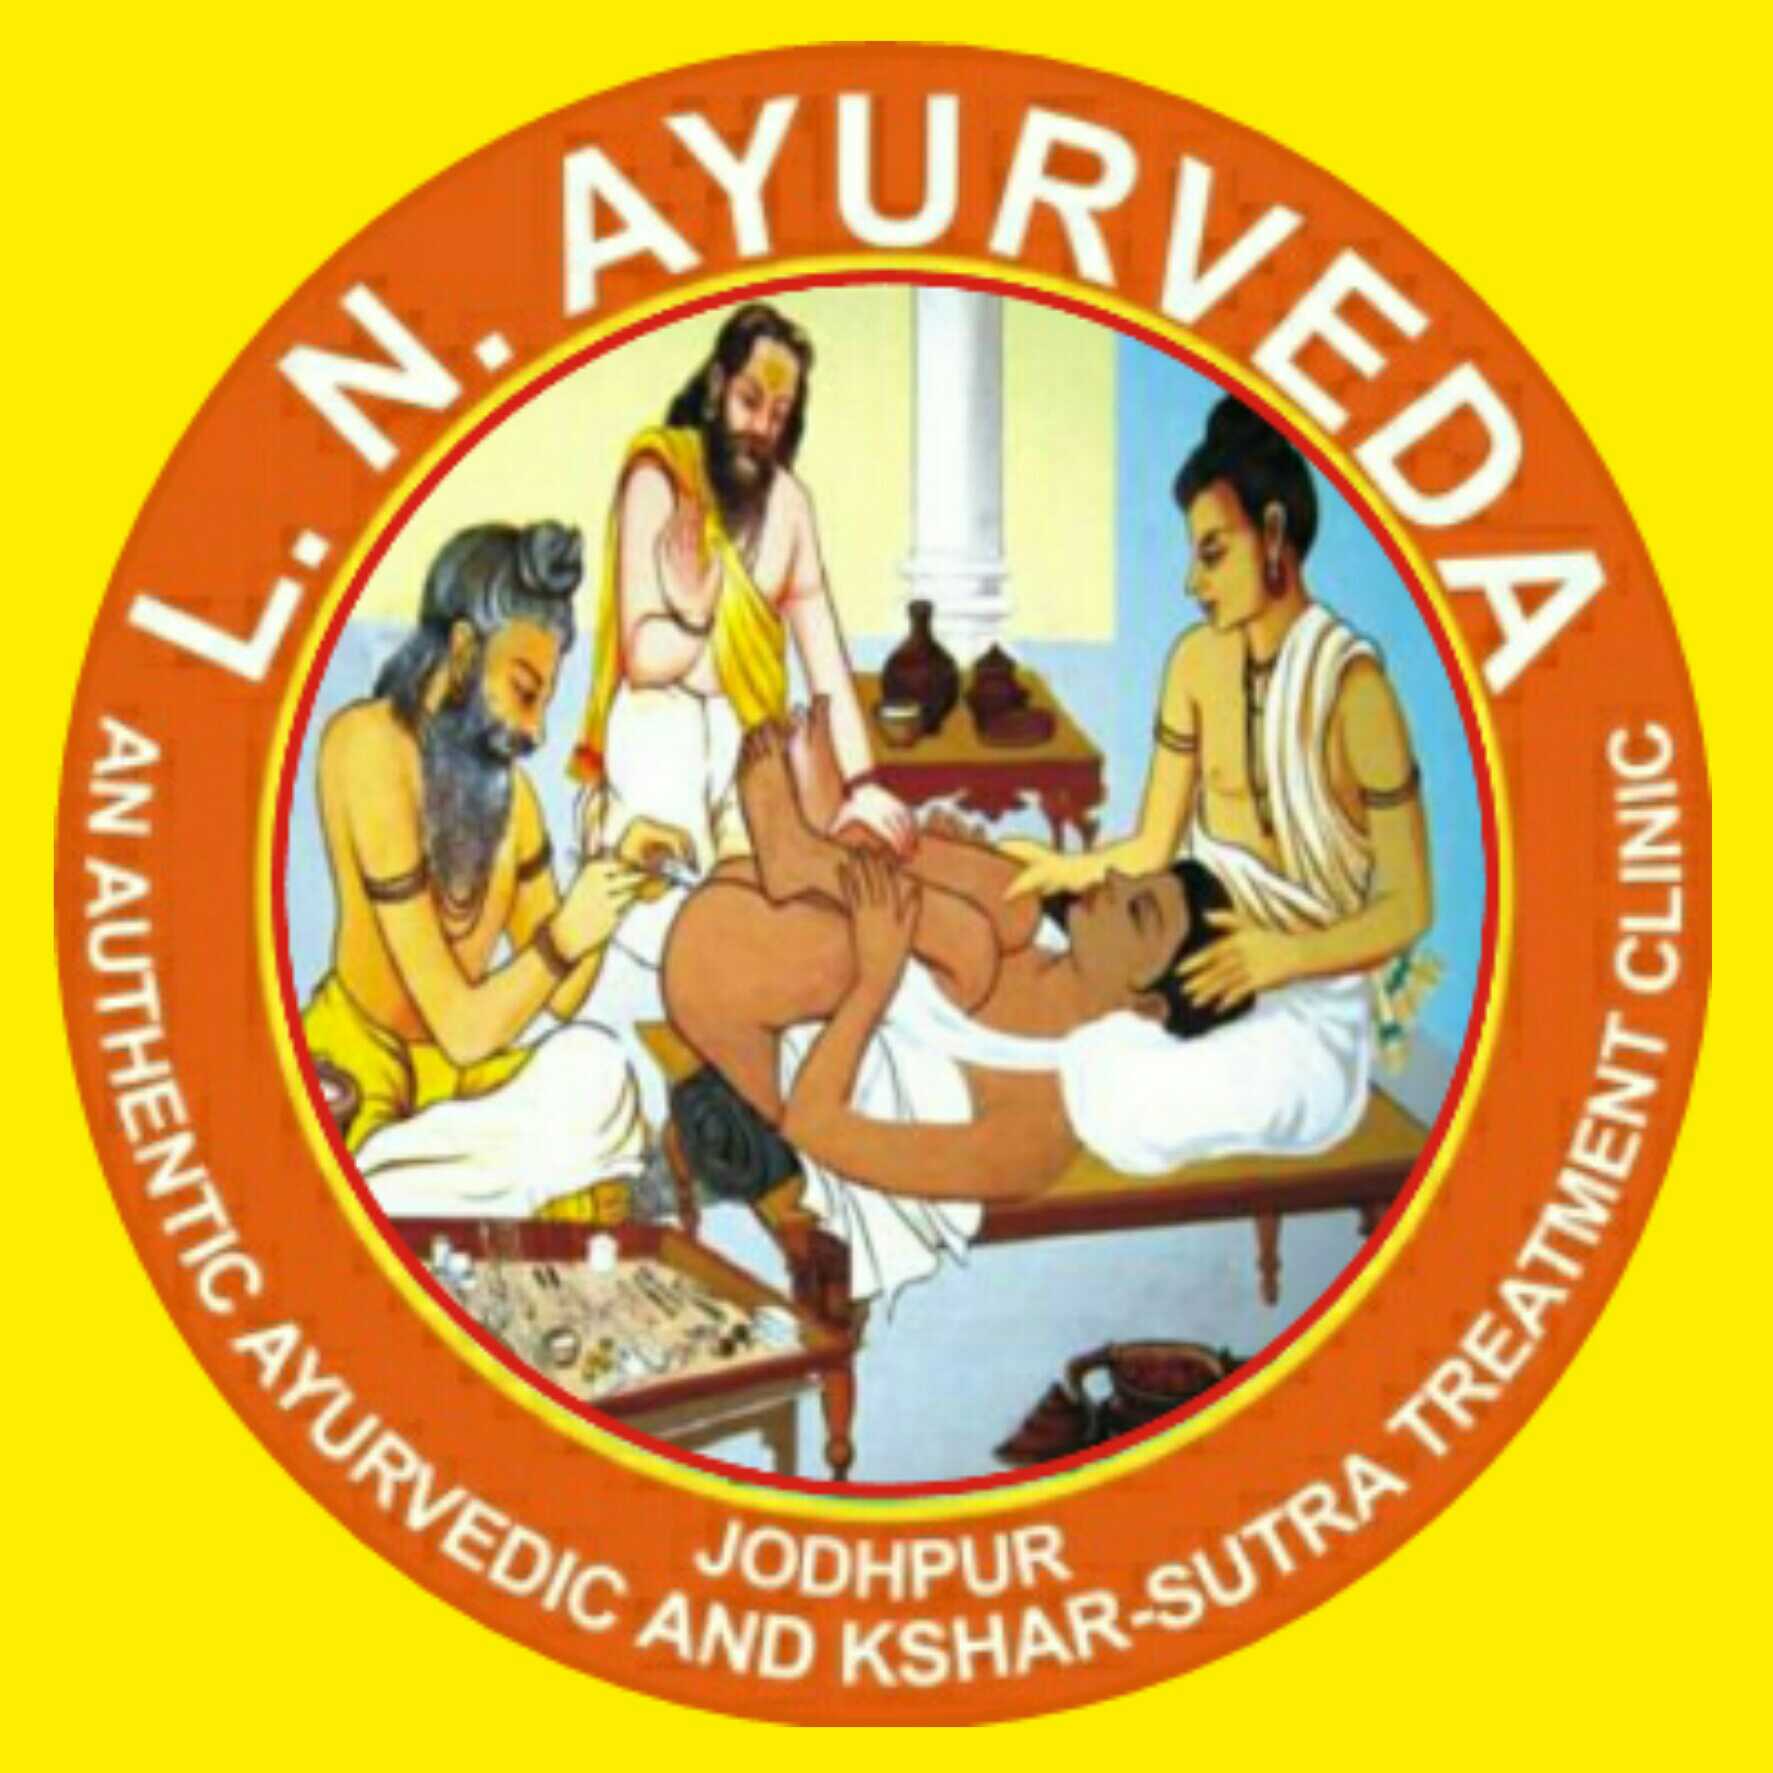 L N Ayurveda & Kshar Sutra Clinic-Jodhpur